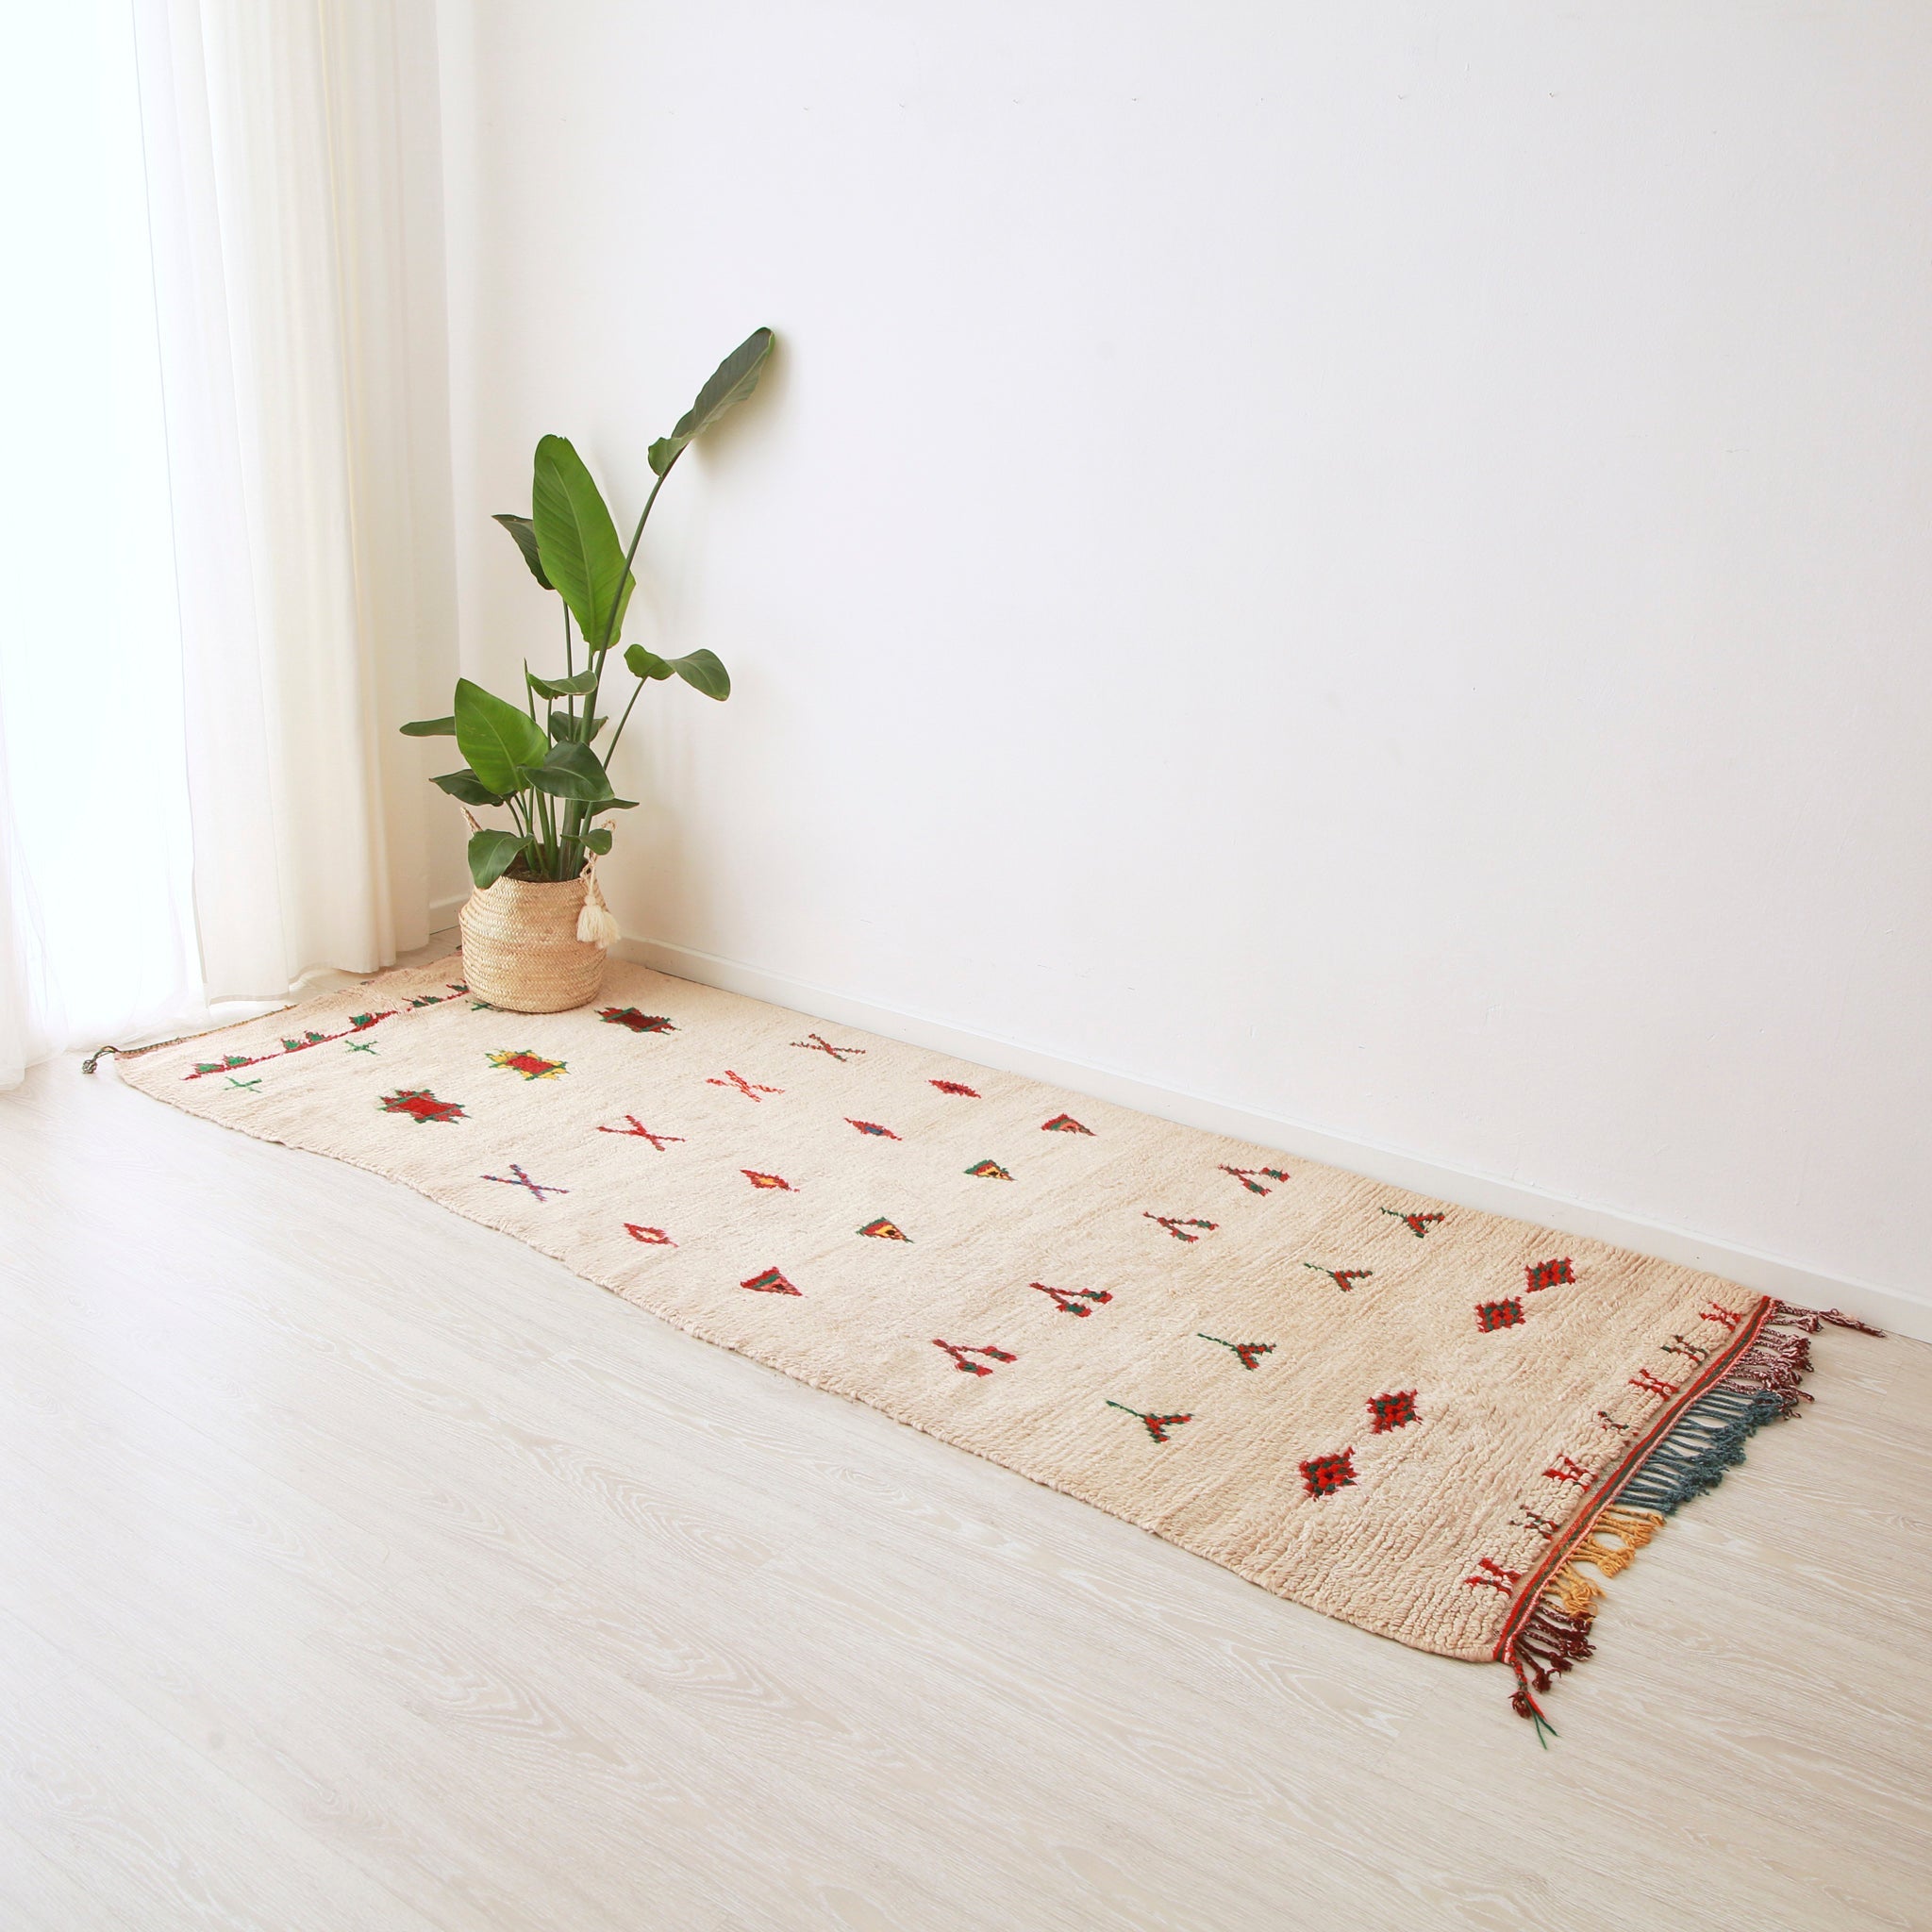 tappeto azilal vintage per corridoio su base bianca con piccoli disegni colorati che ri ripetono su 8 linee. Sul tappeto c'è una pianta